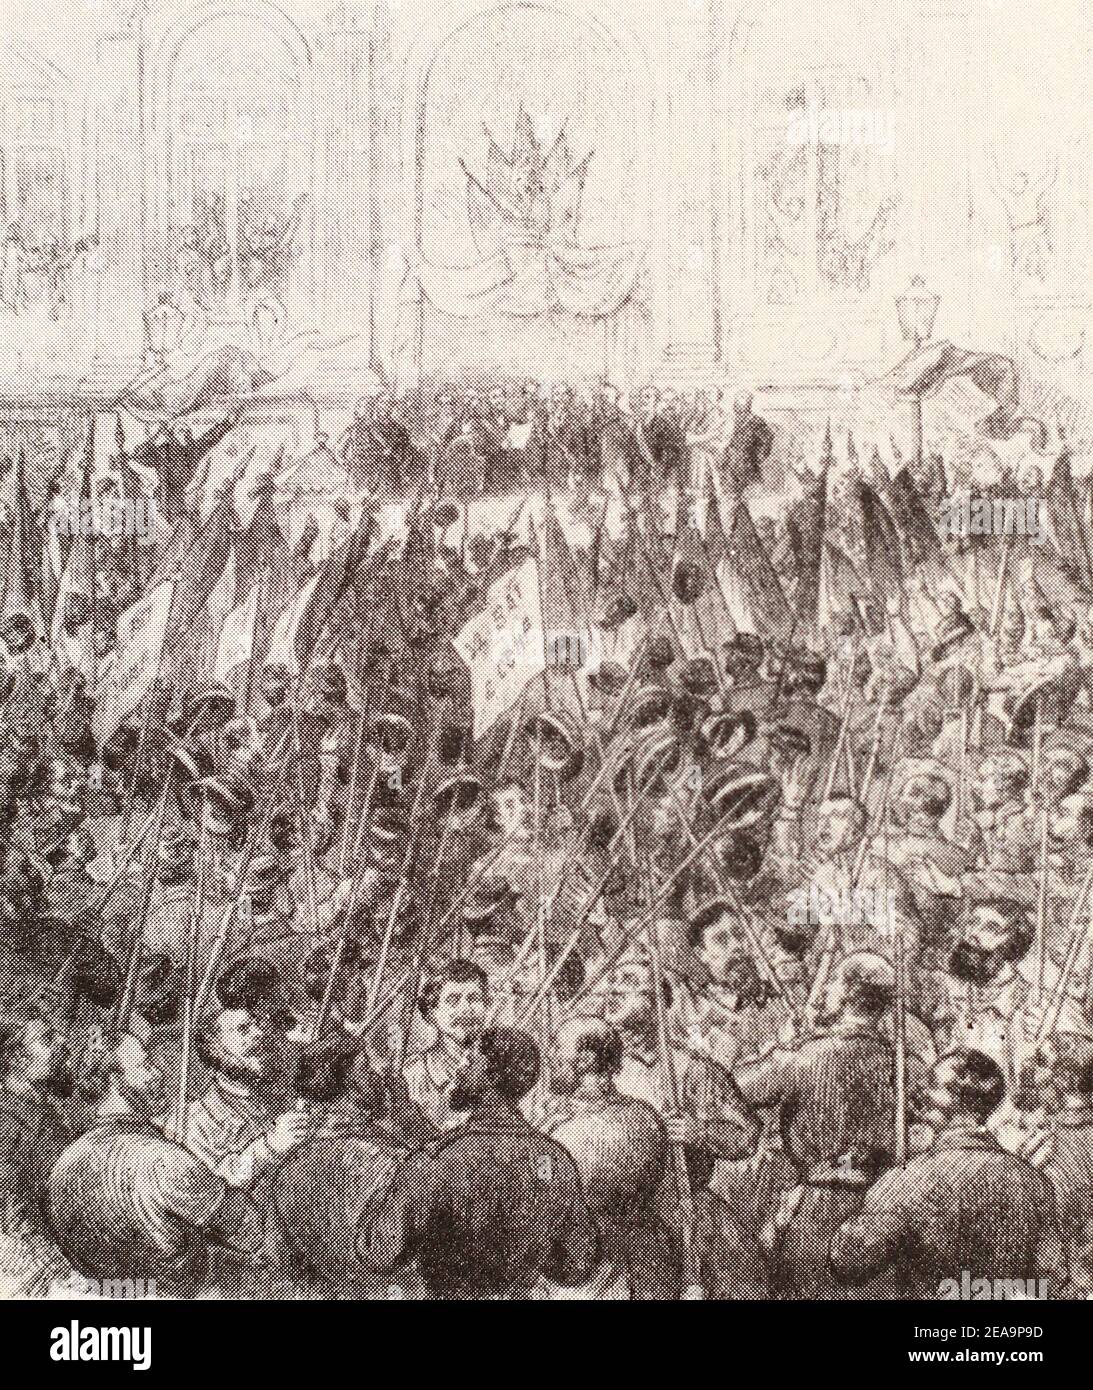 Proklamation der Pariser Kommune auf dem Platz vor dem Rathaus. Gravur von 1871. Stockfoto